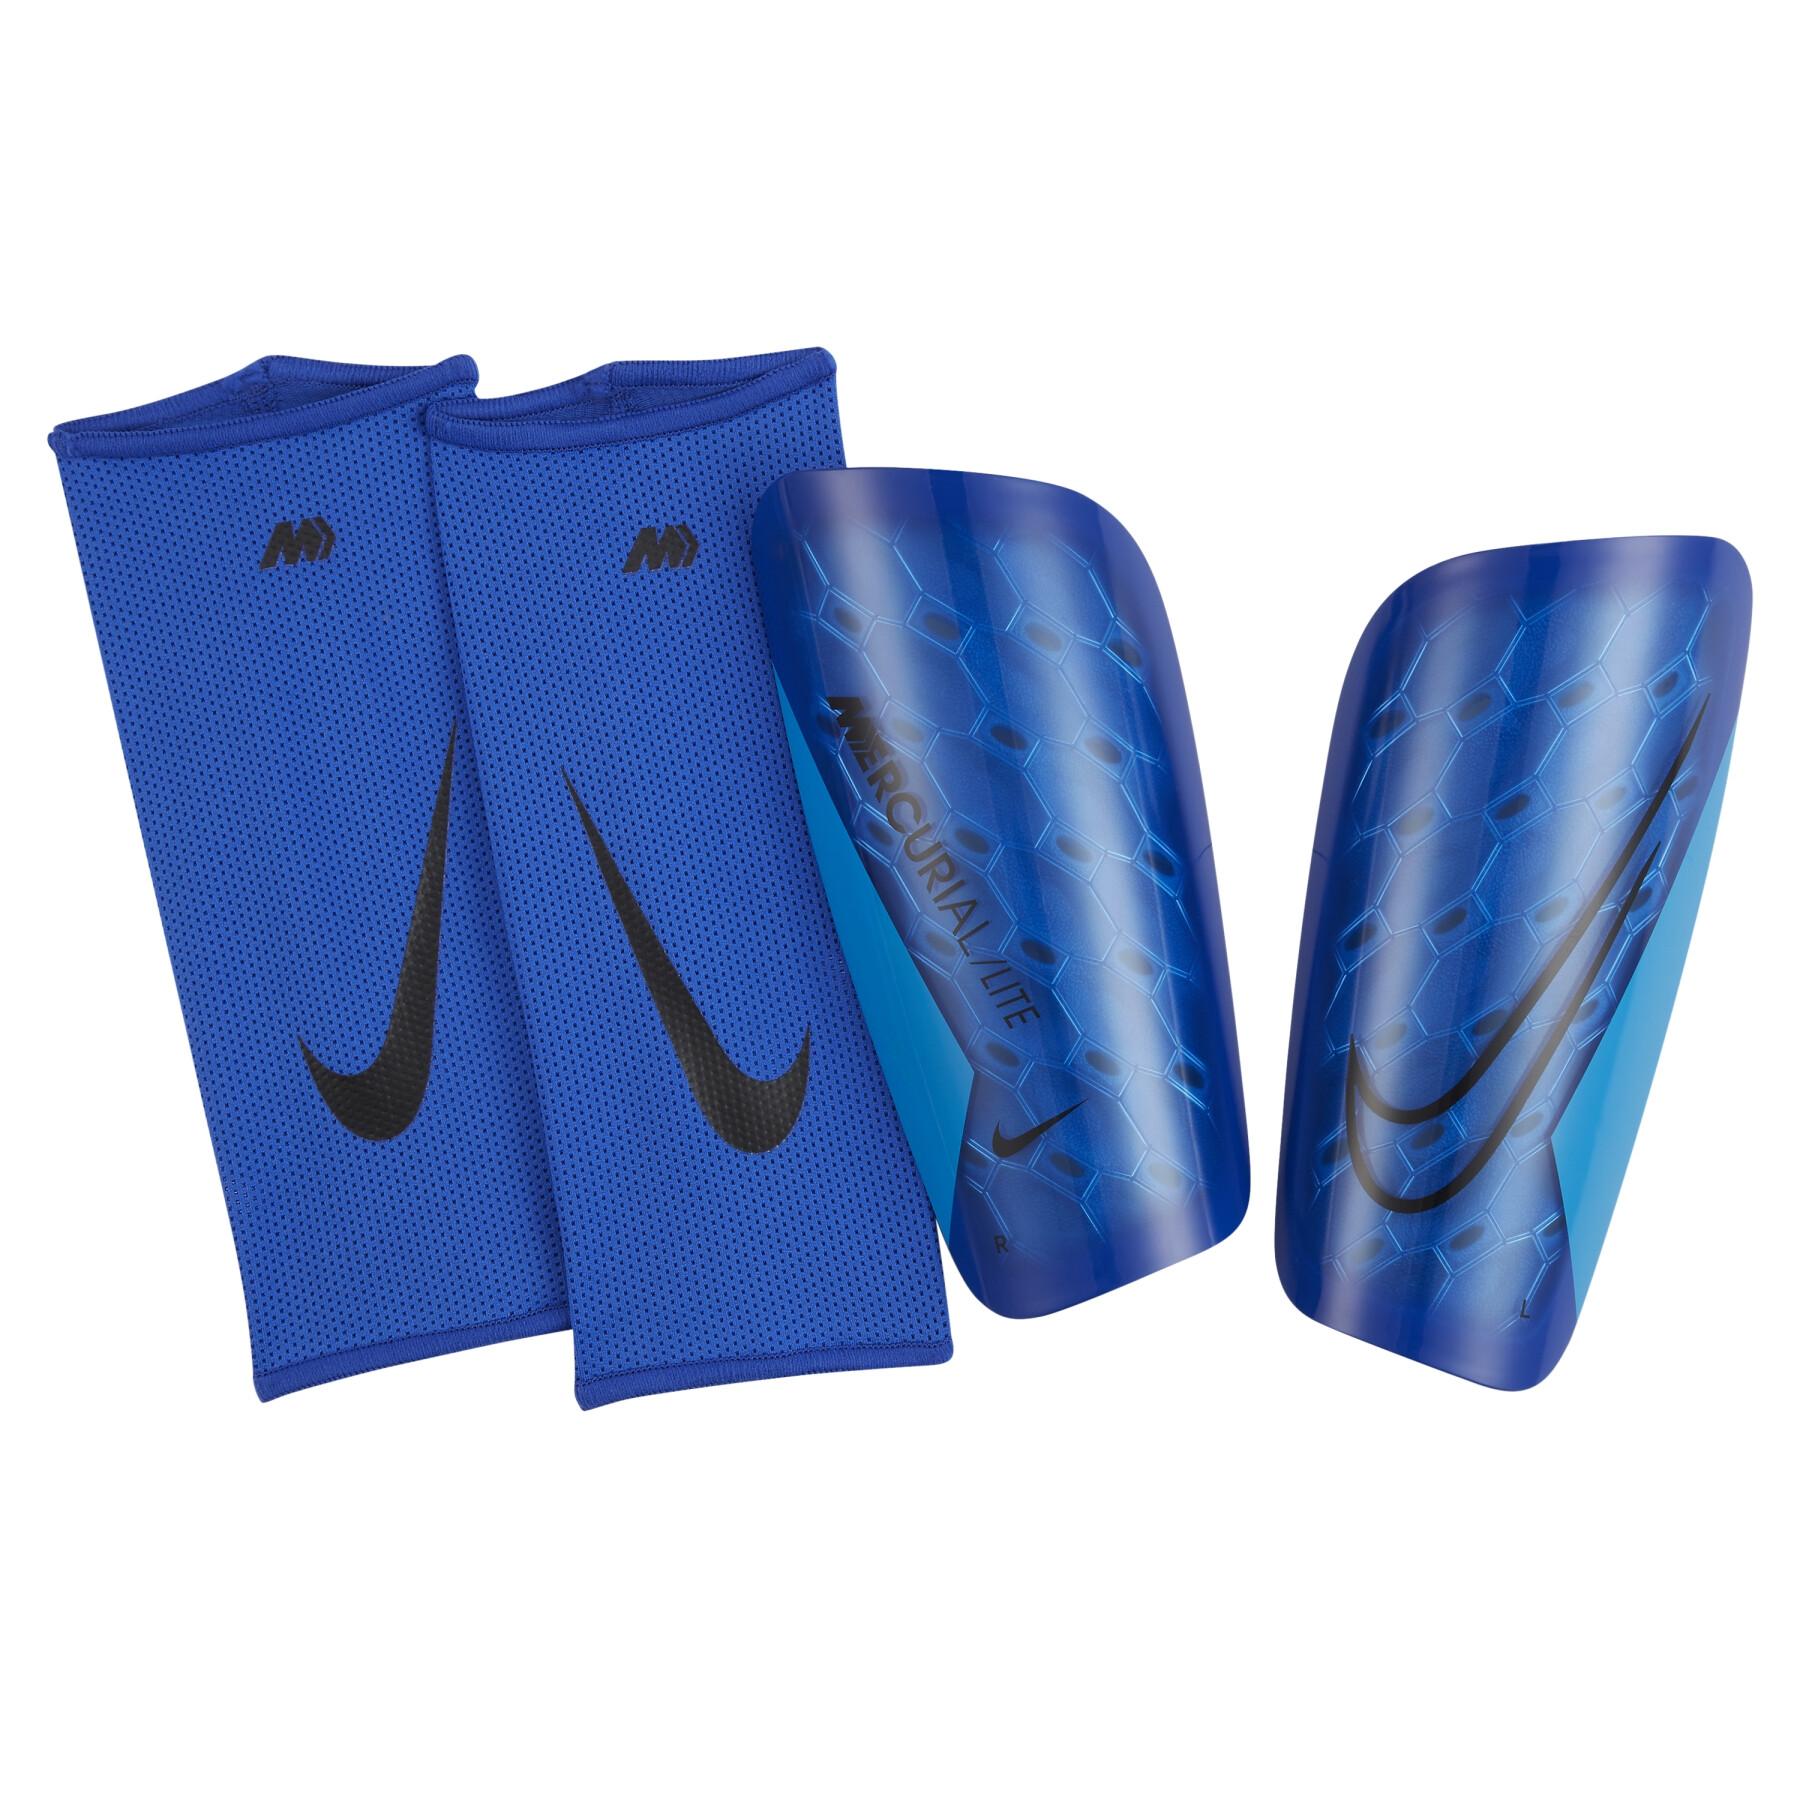 Scheenbeschermers Nike Mercurial Lite - Beschermingen Uitrusting - Voetbal